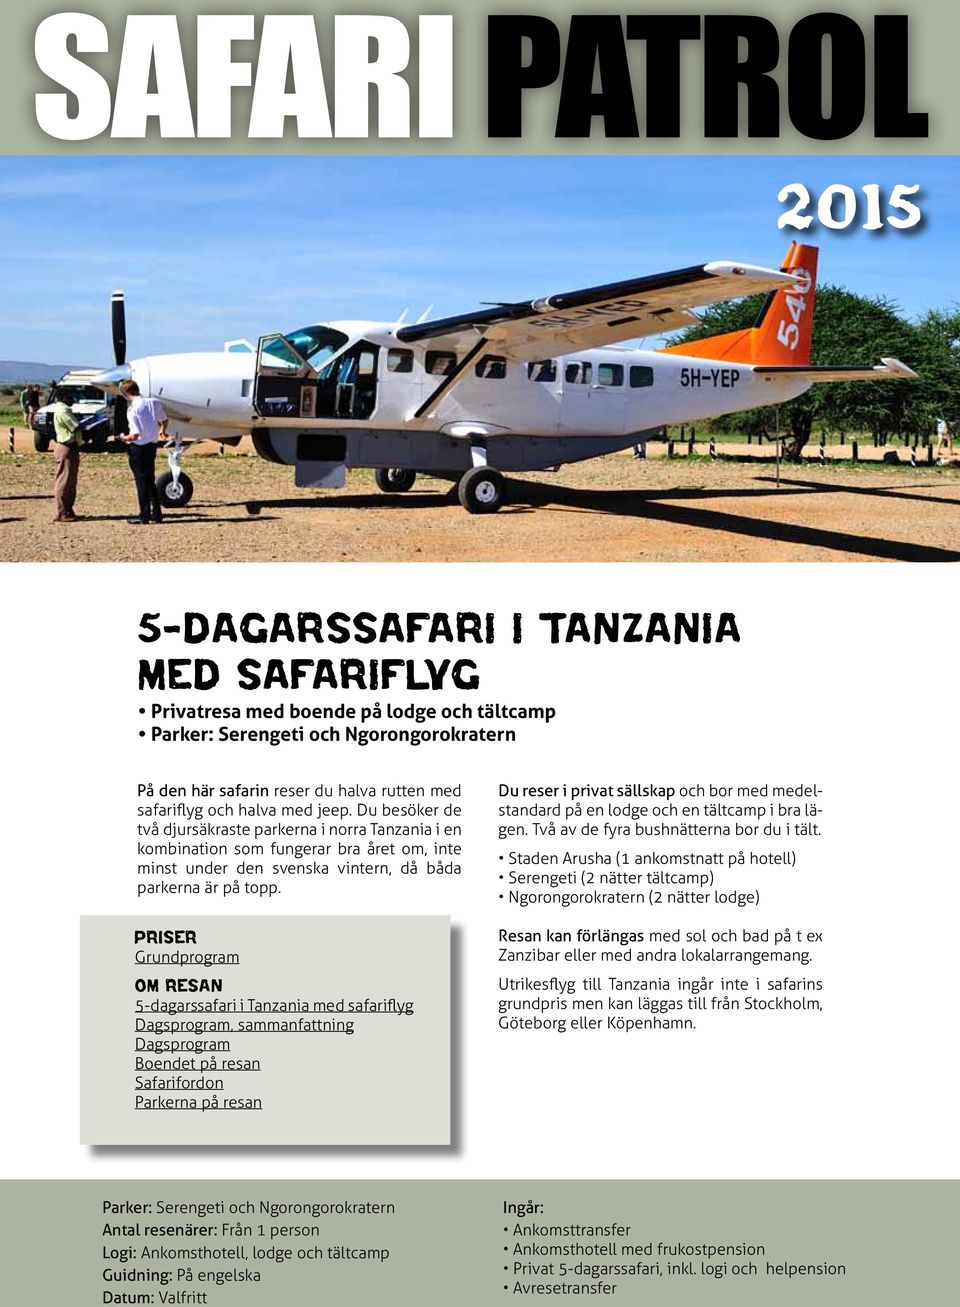 Priser Grundprogram om resan 5-dagarssafari i Tanzania med safariflyg Dagsprogram, sammanfattning Dagsprogram Boendet på resan Safarifordon Parkerna på resan Du reser i privat sällskap och bor med